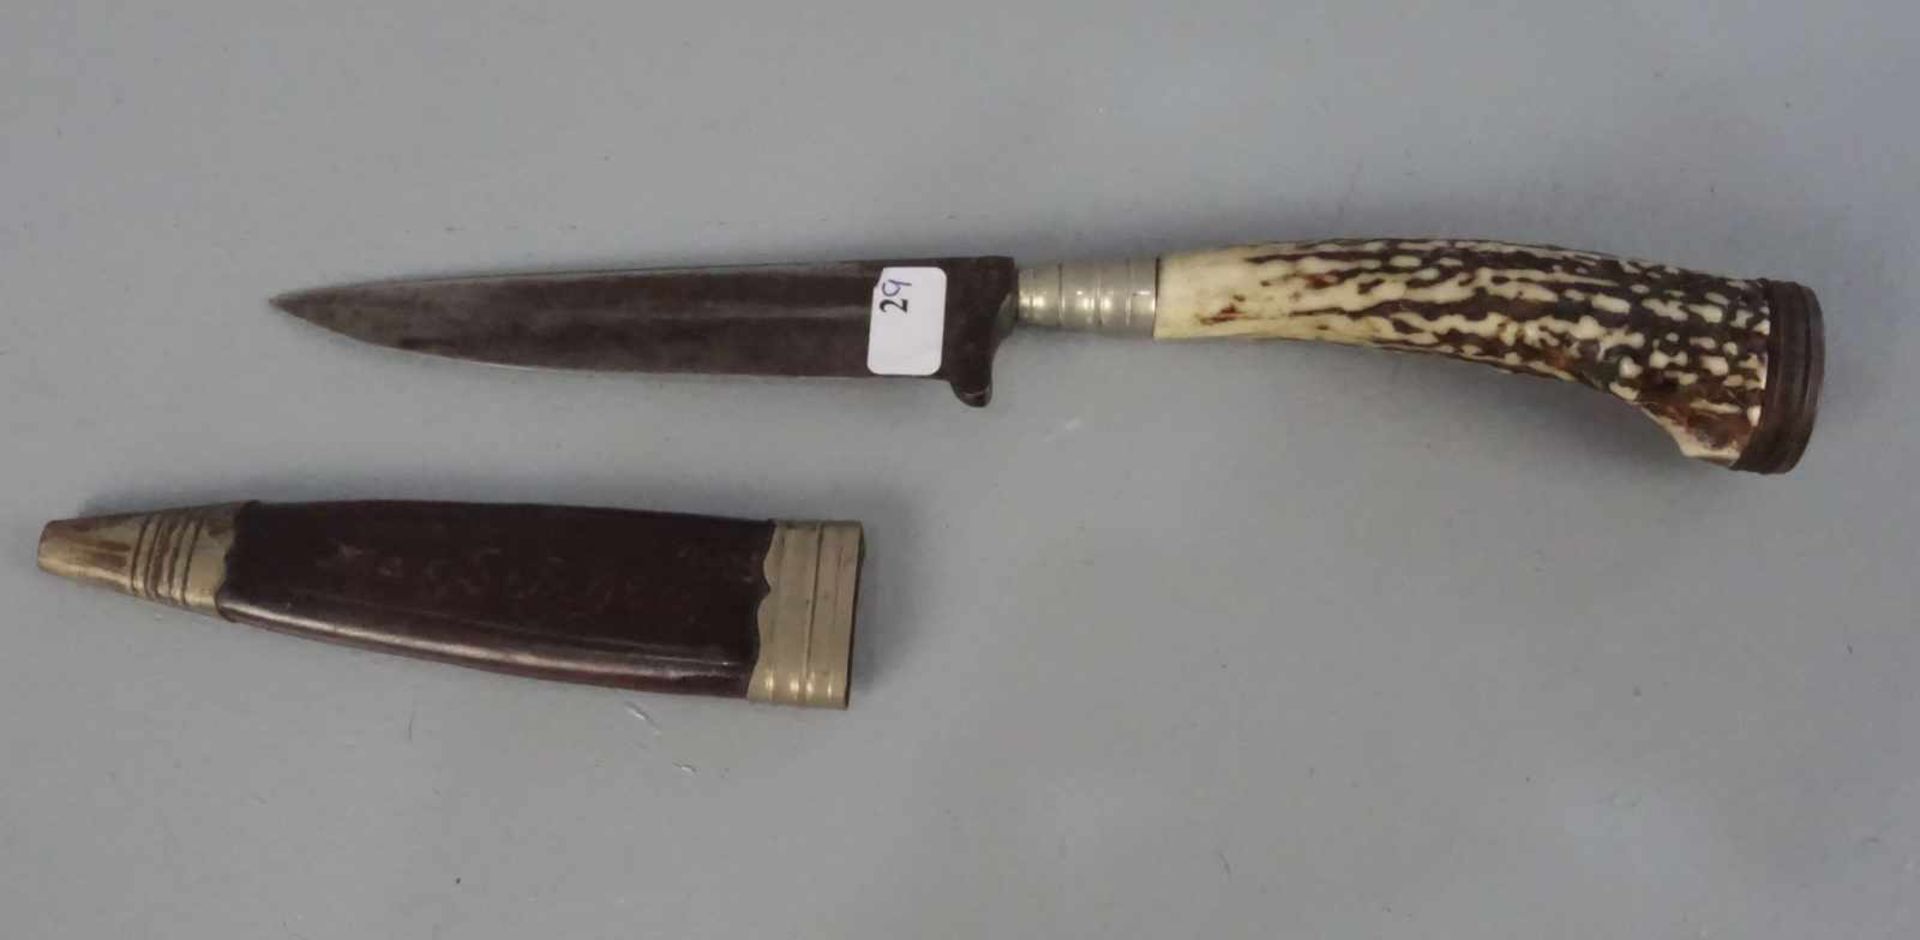 JAGDLICHES MESSER MIT SCHEIDE / knife, Bein, Metall und Leder. Griff aus Bein / Horn; auf der - Image 3 of 3